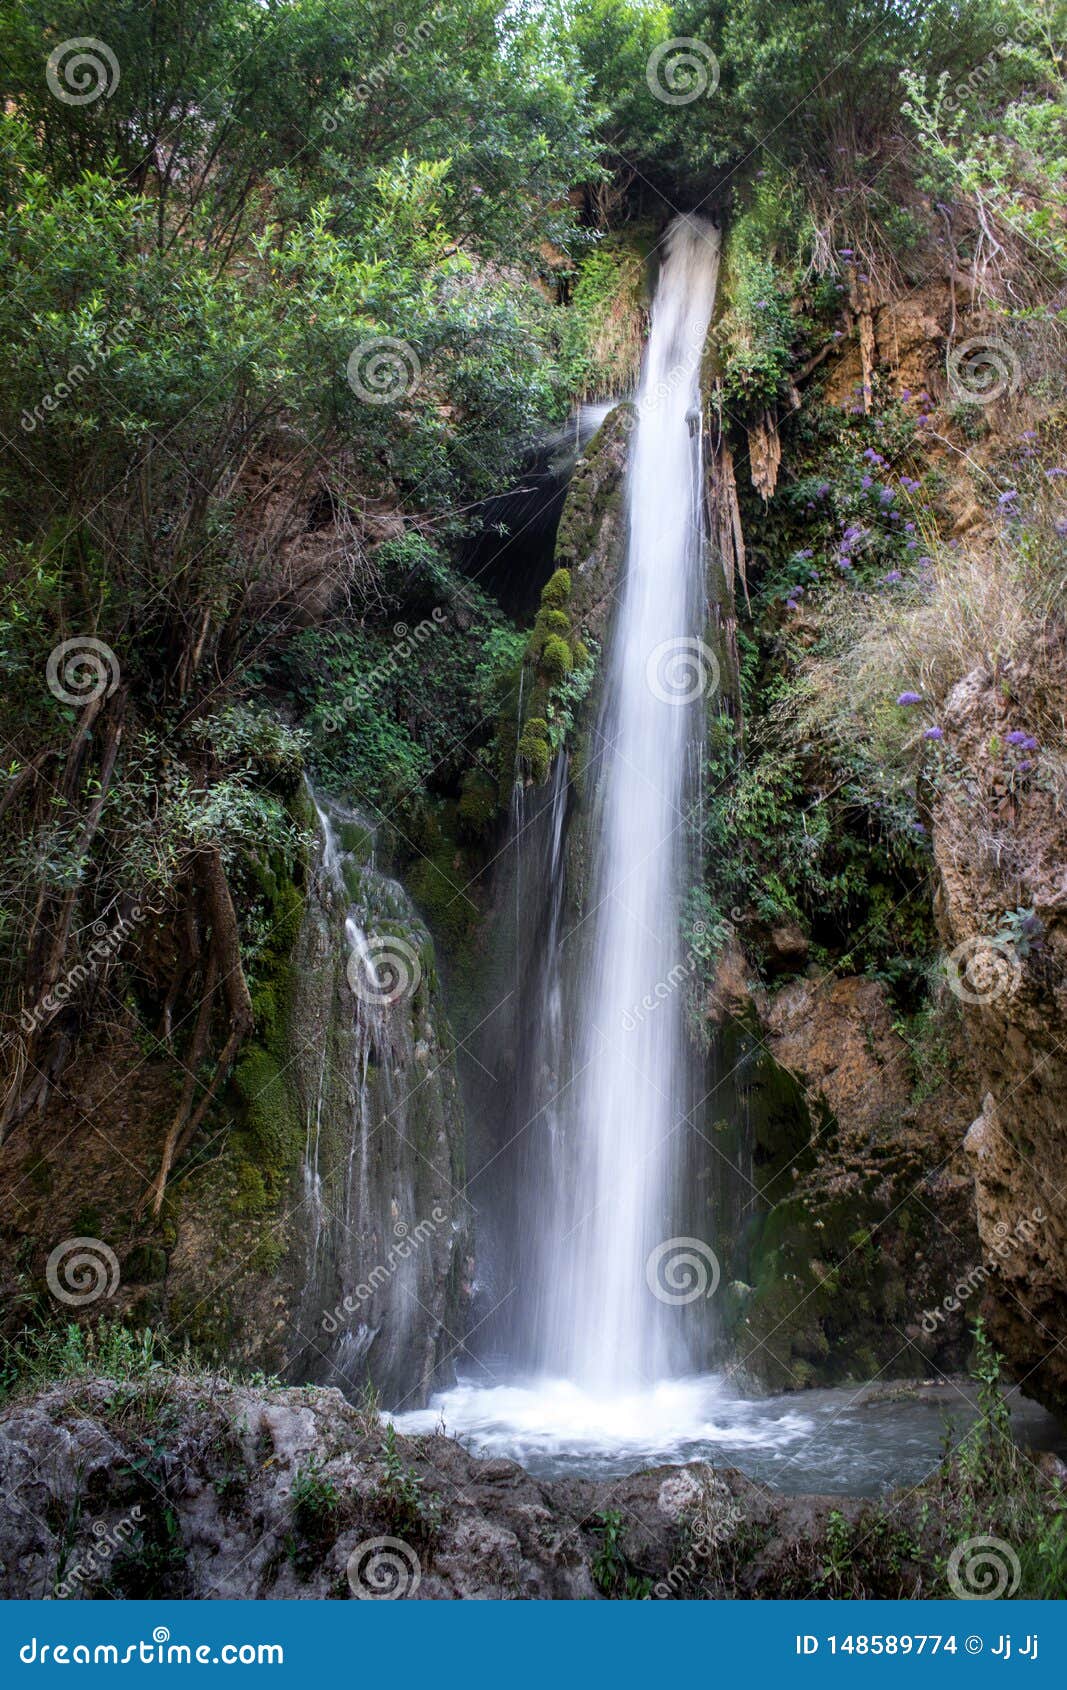 cute waterfall in alpujarra